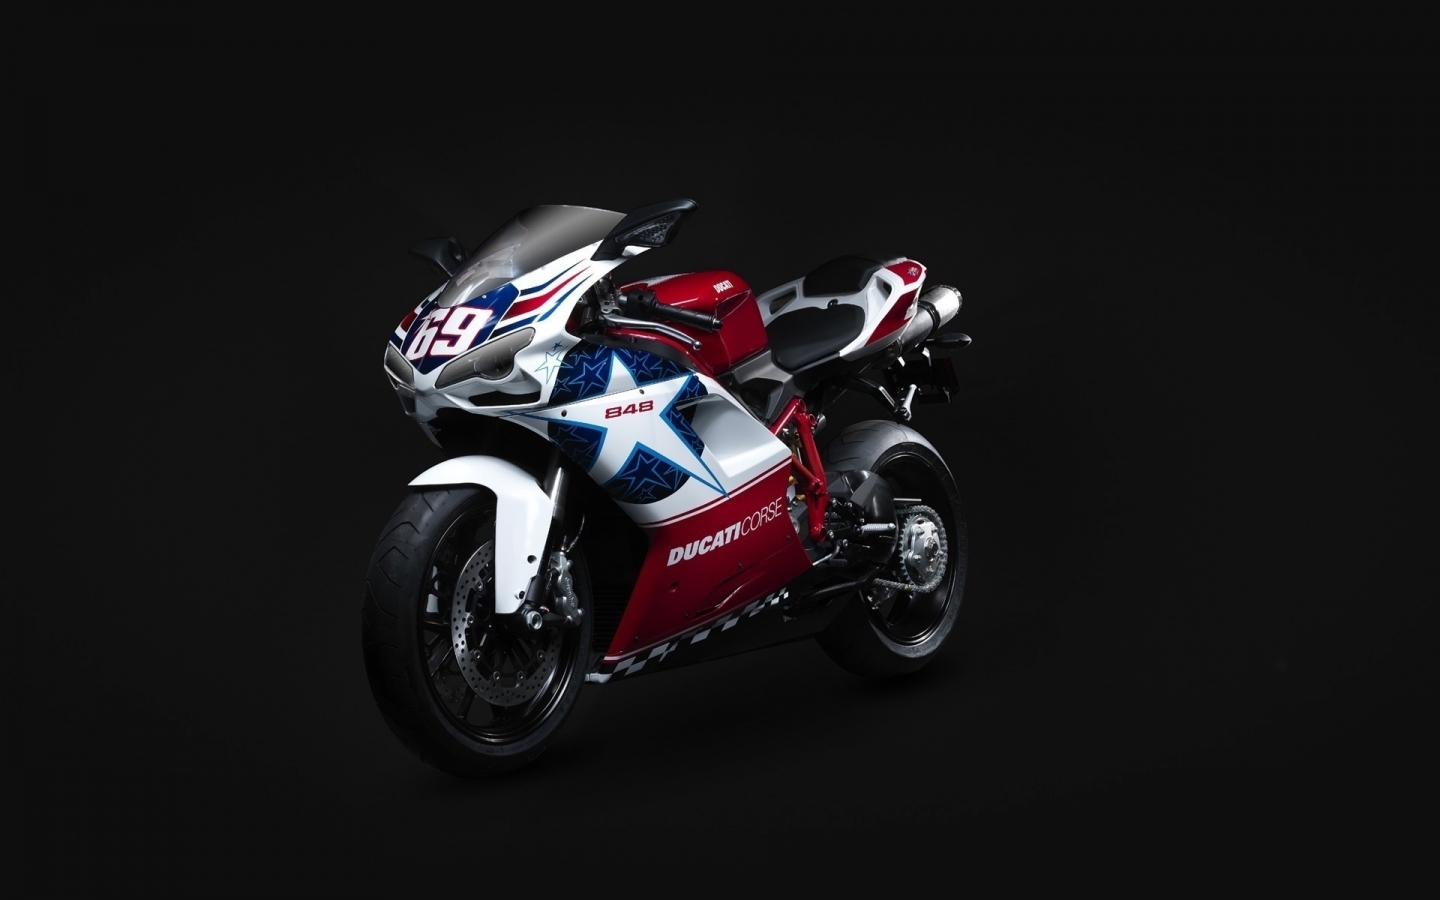 Ducati Corse 848 for 1440 x 900 widescreen resolution